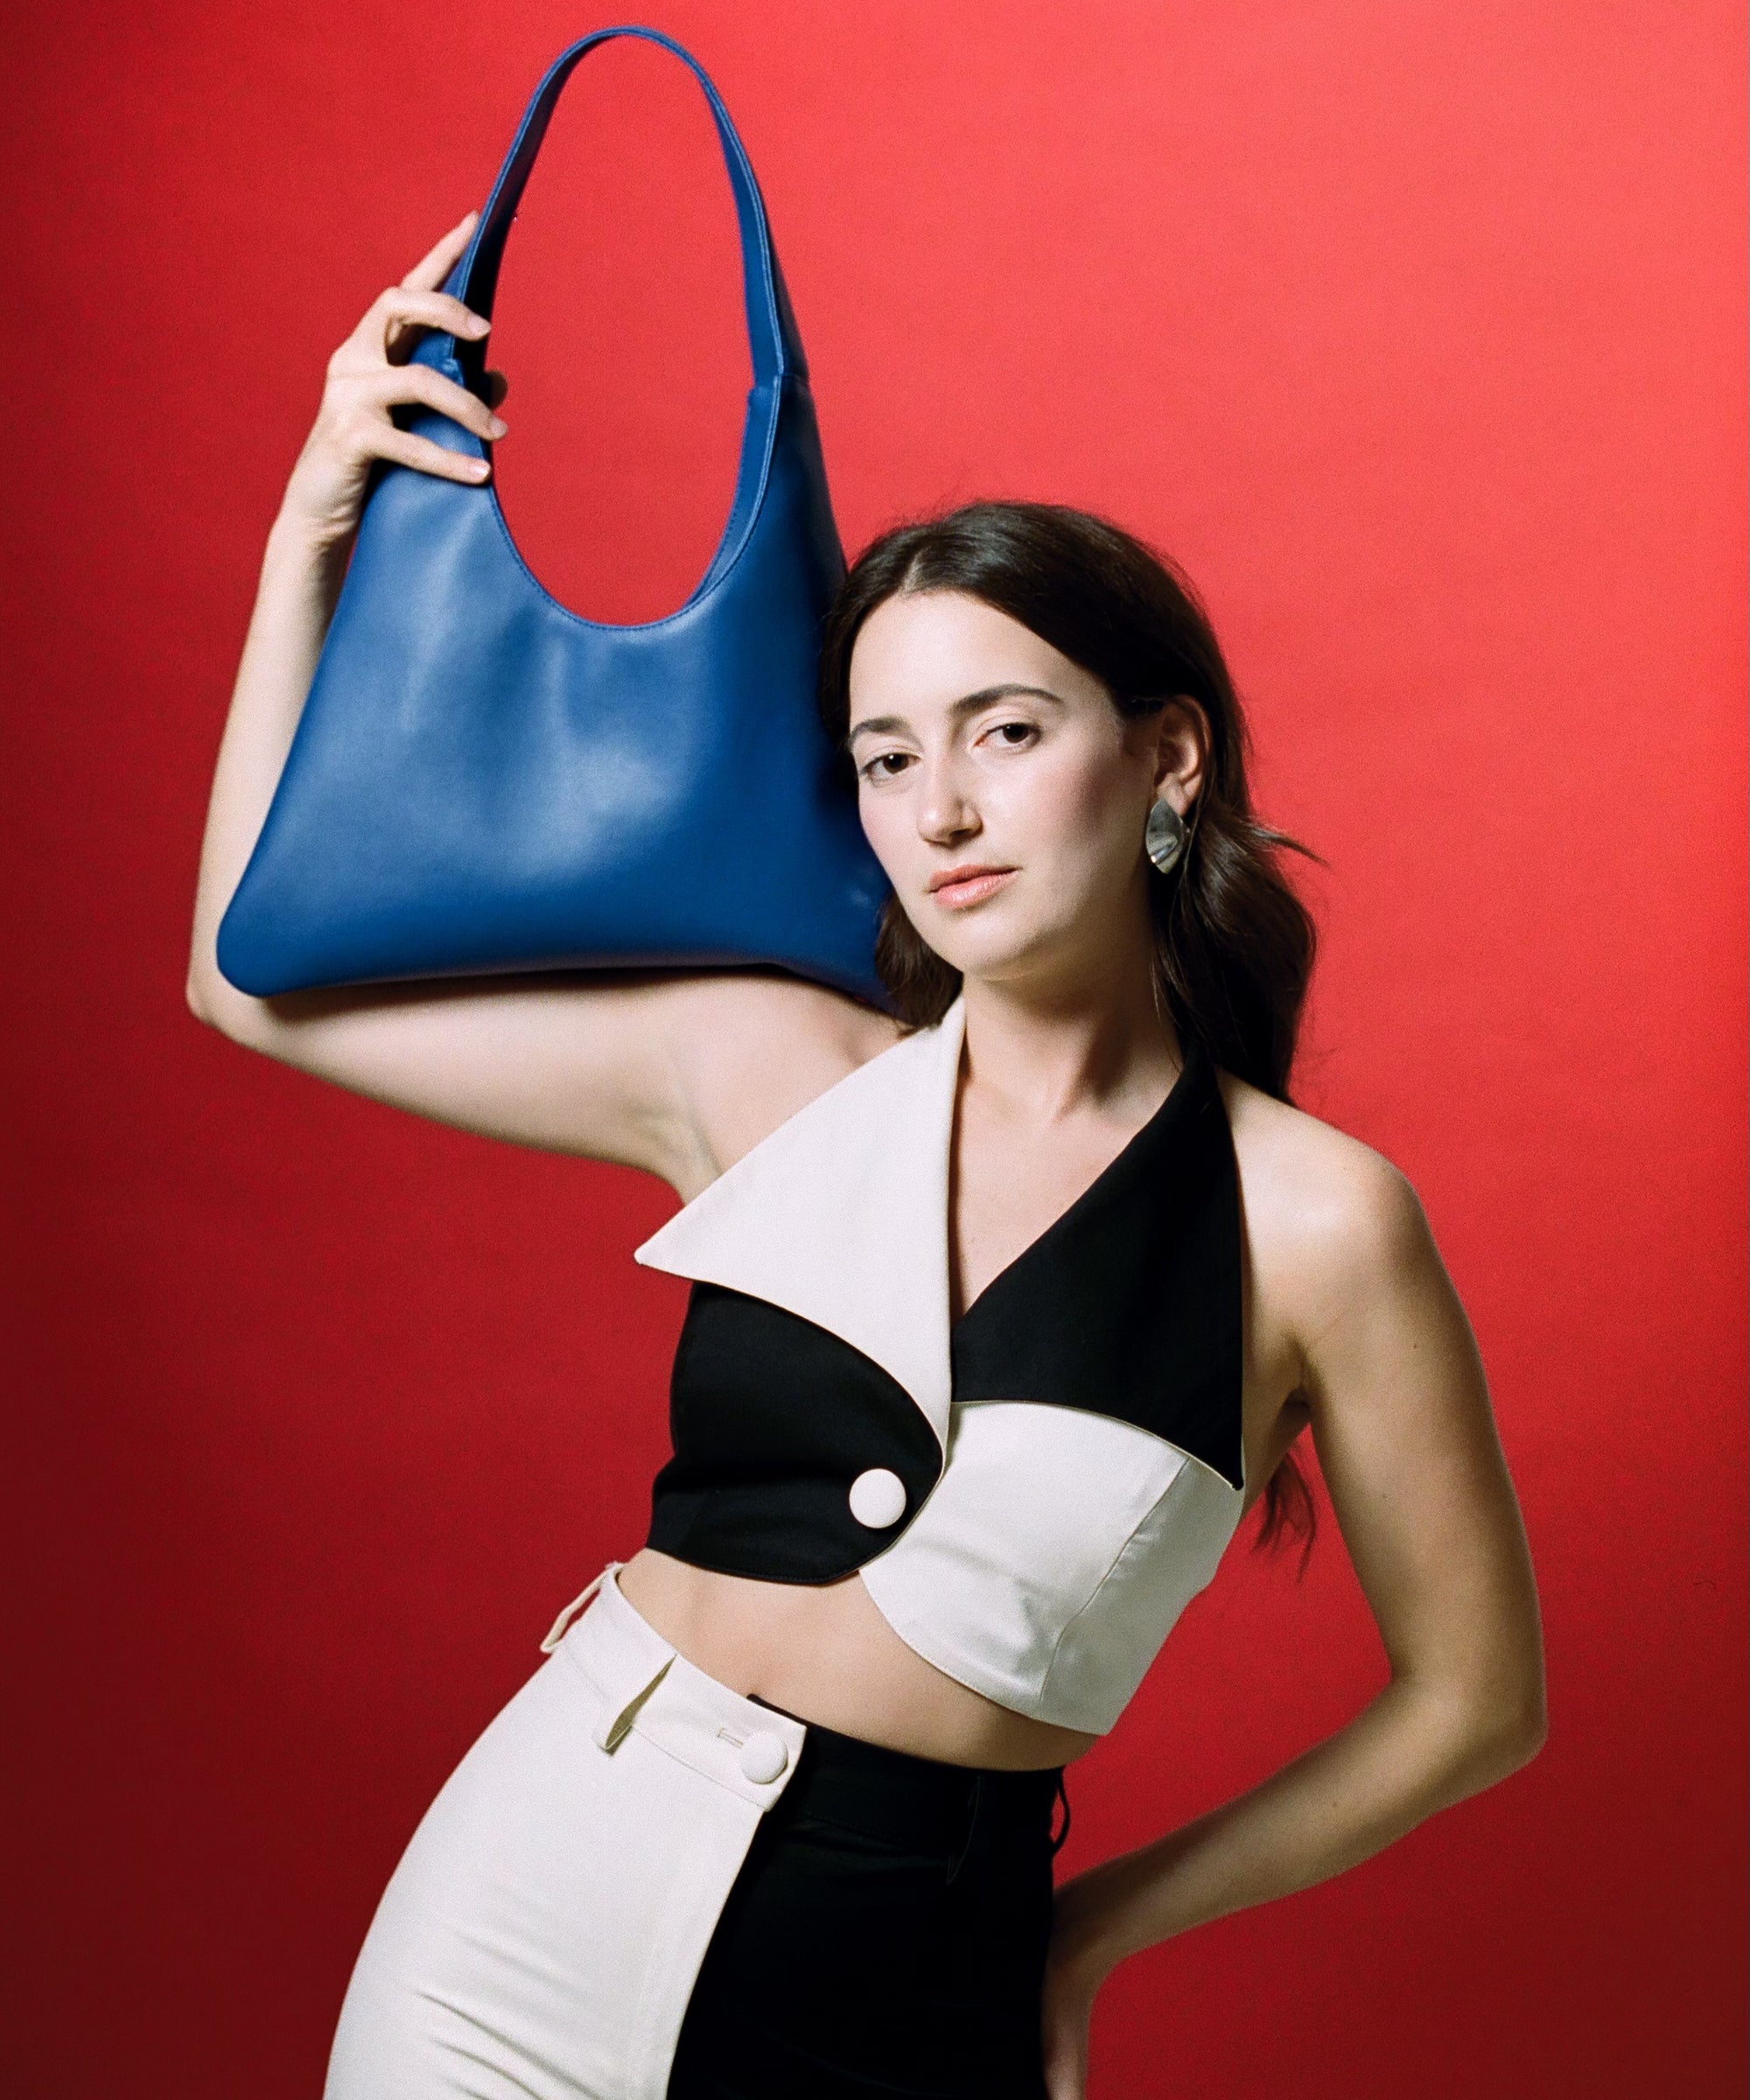 The independent handbag designer awards